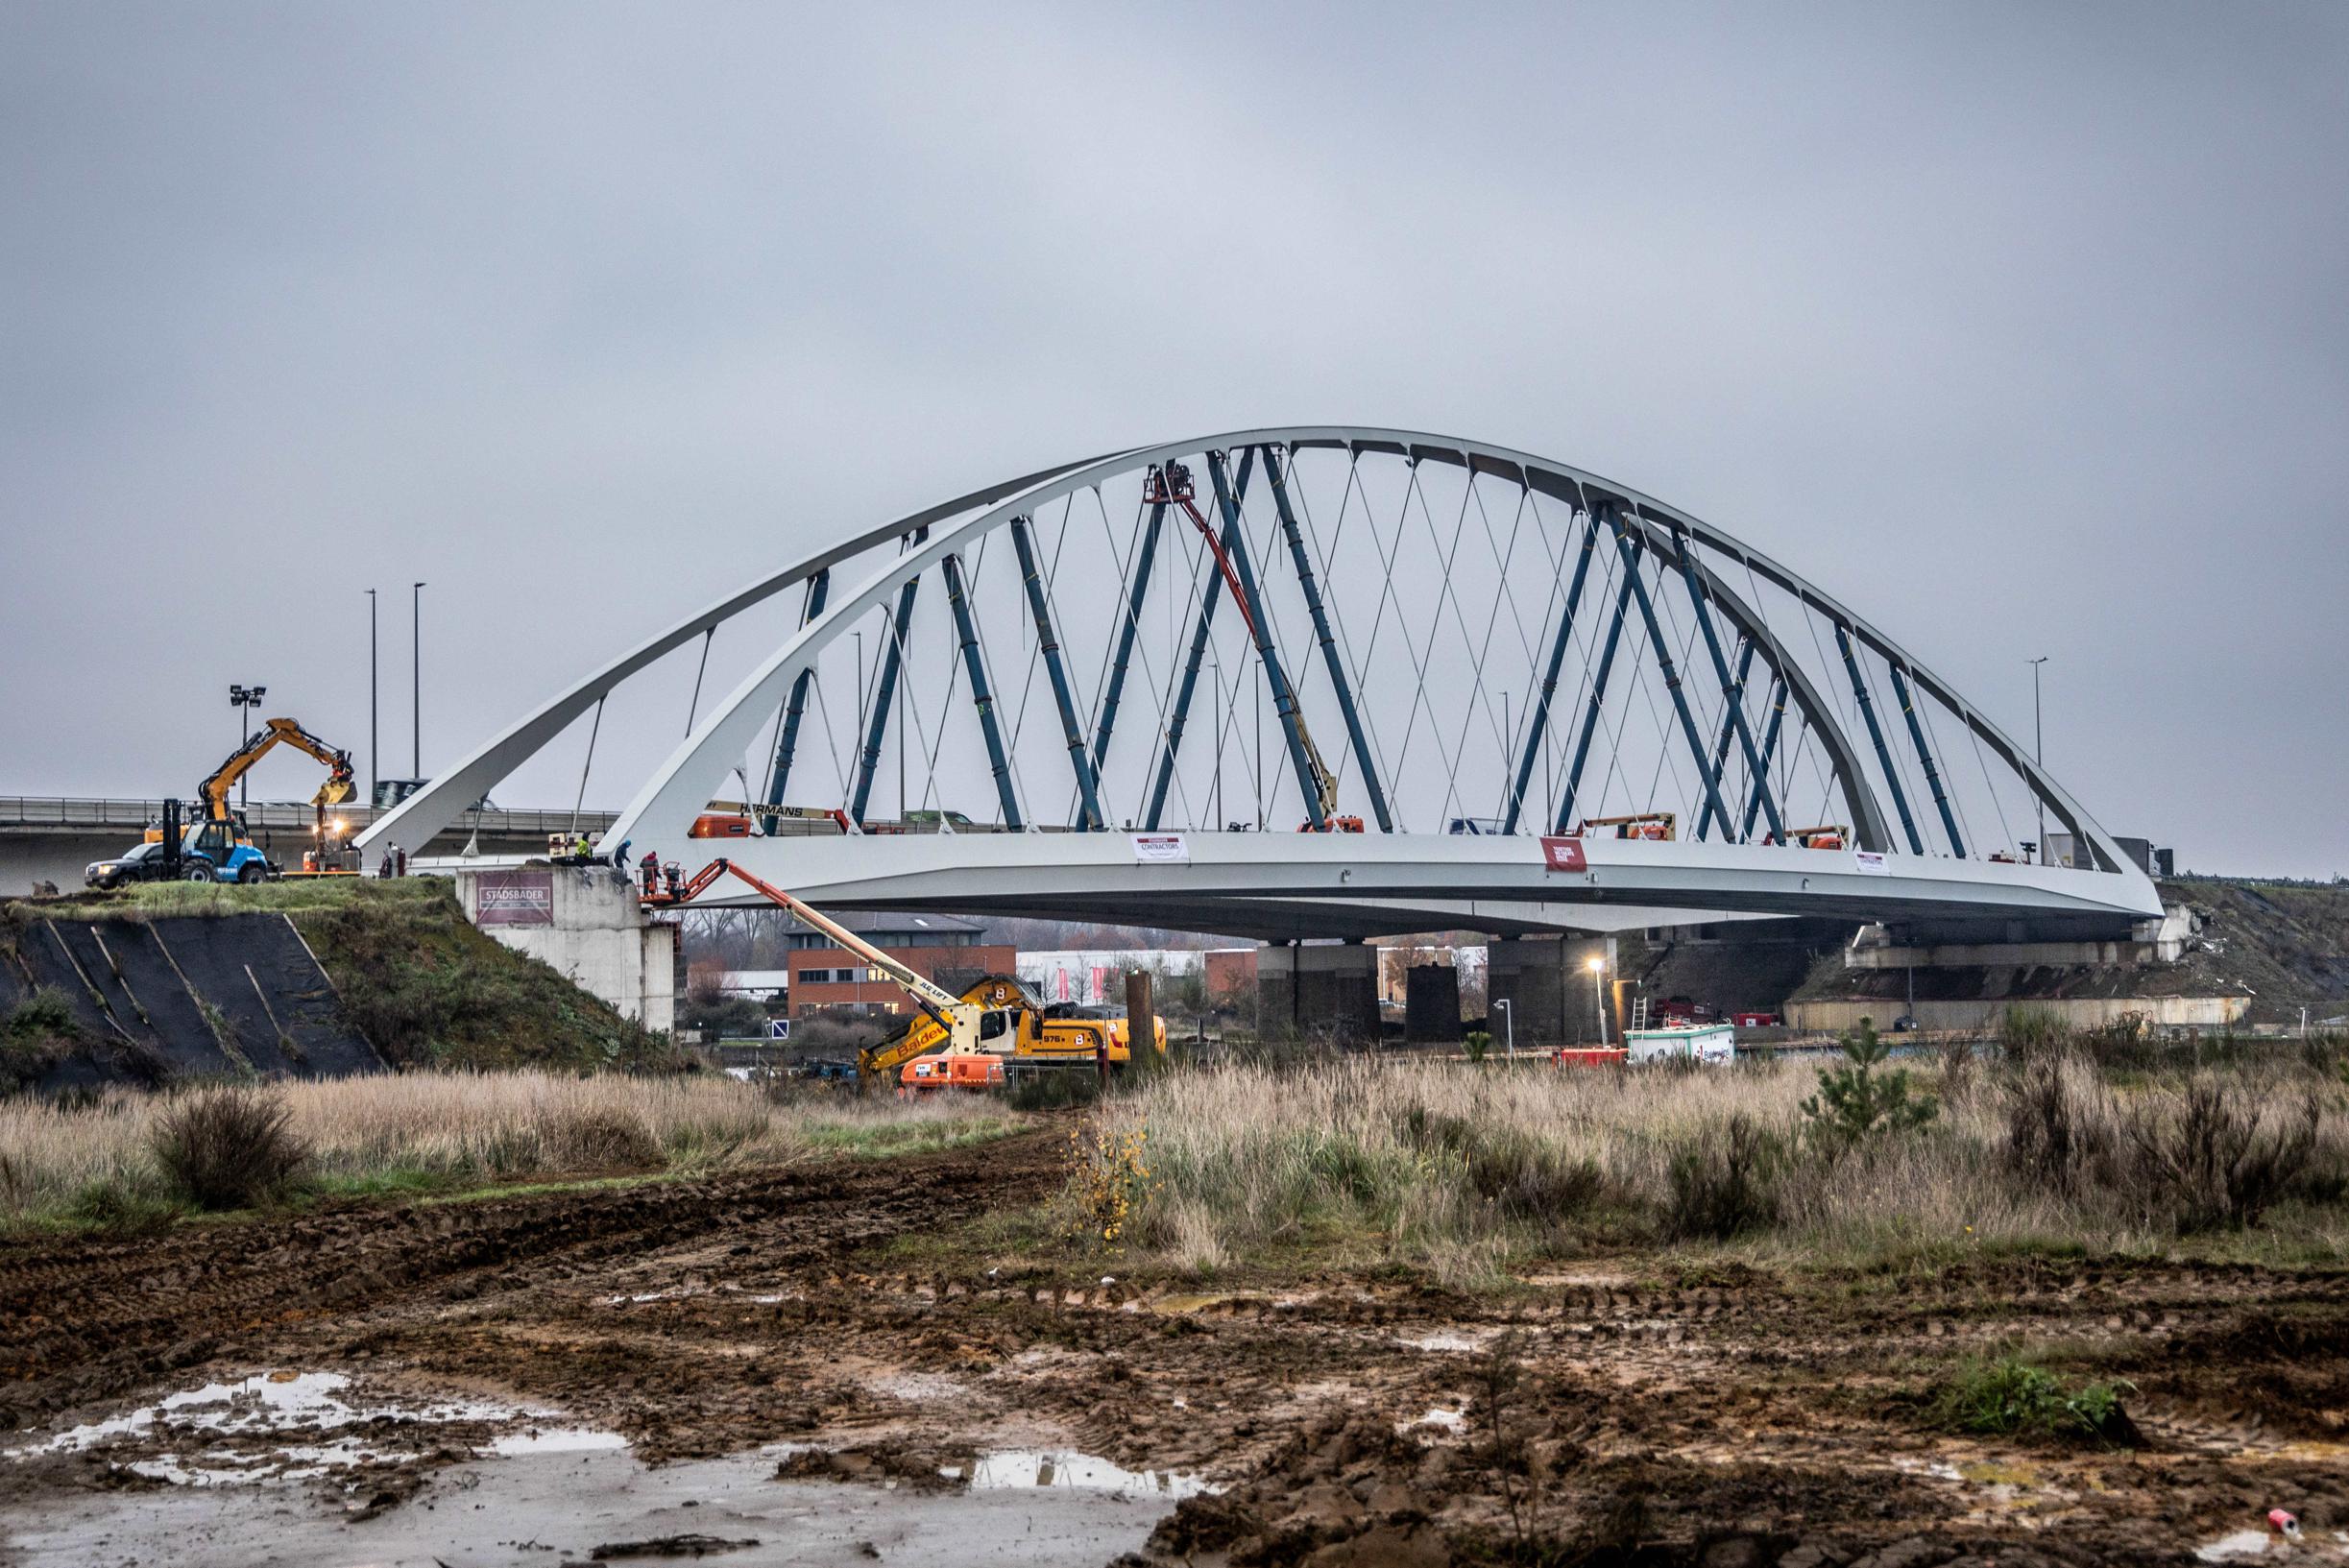 Viversel krijgt dit weekend nieuwe kanaalbrug: “Deze weegt drie keer meer dan normaal”